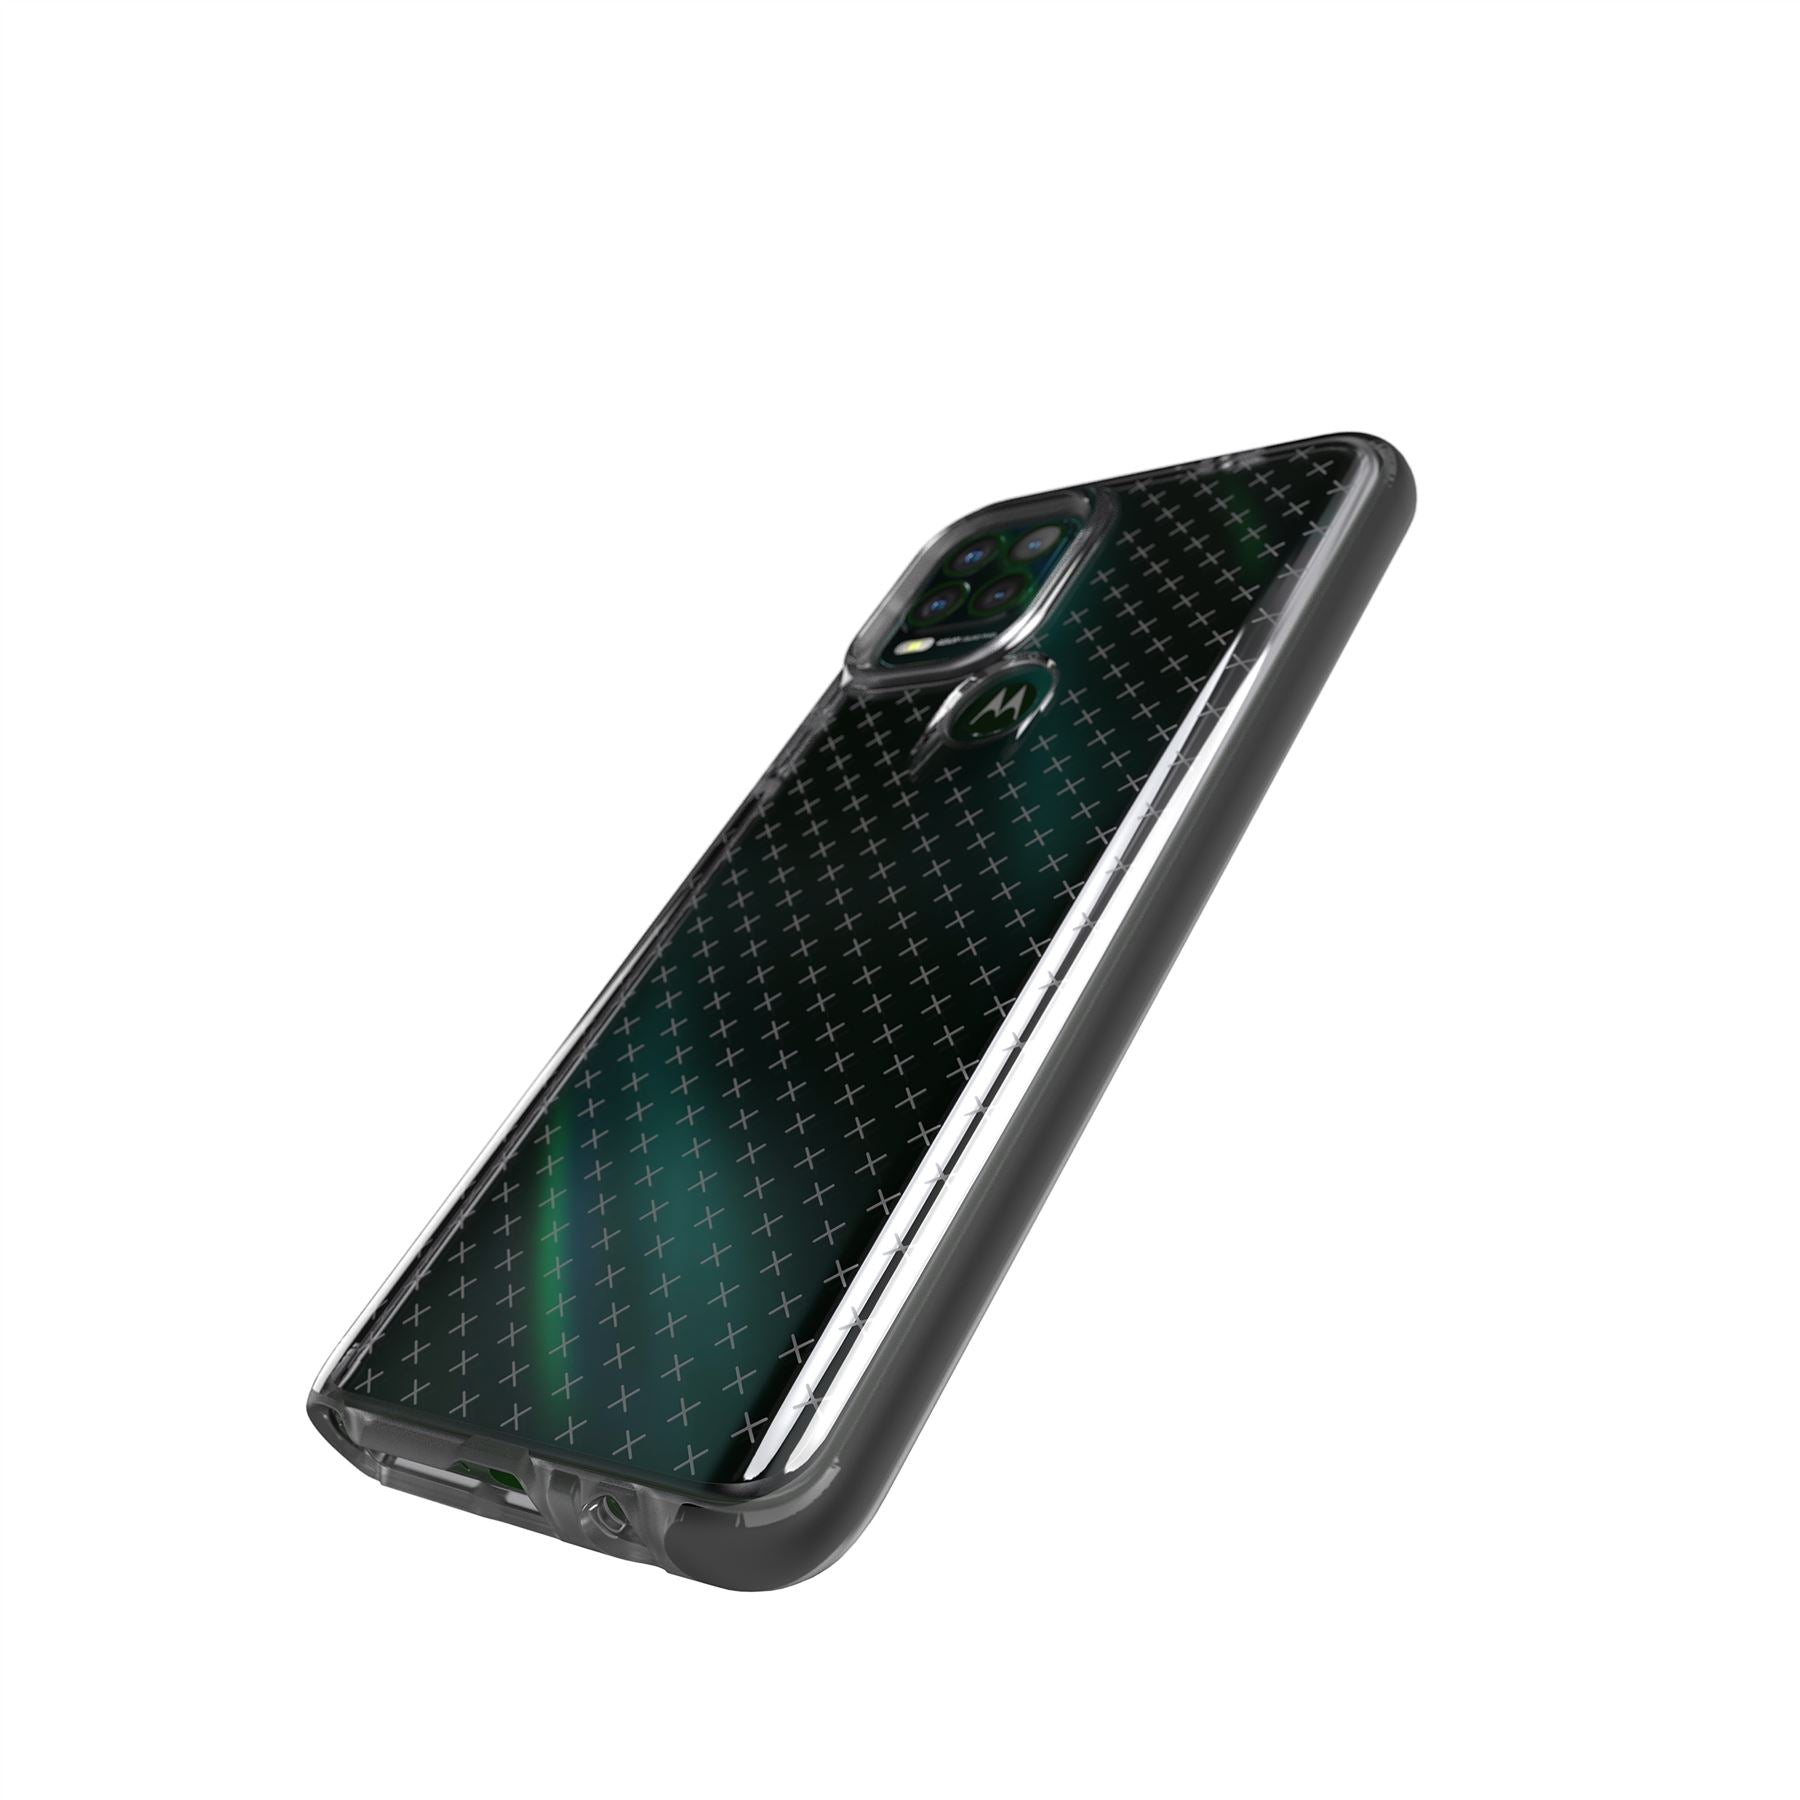 Evo Check - Moto G Stylus 5G Case - Smokey Black